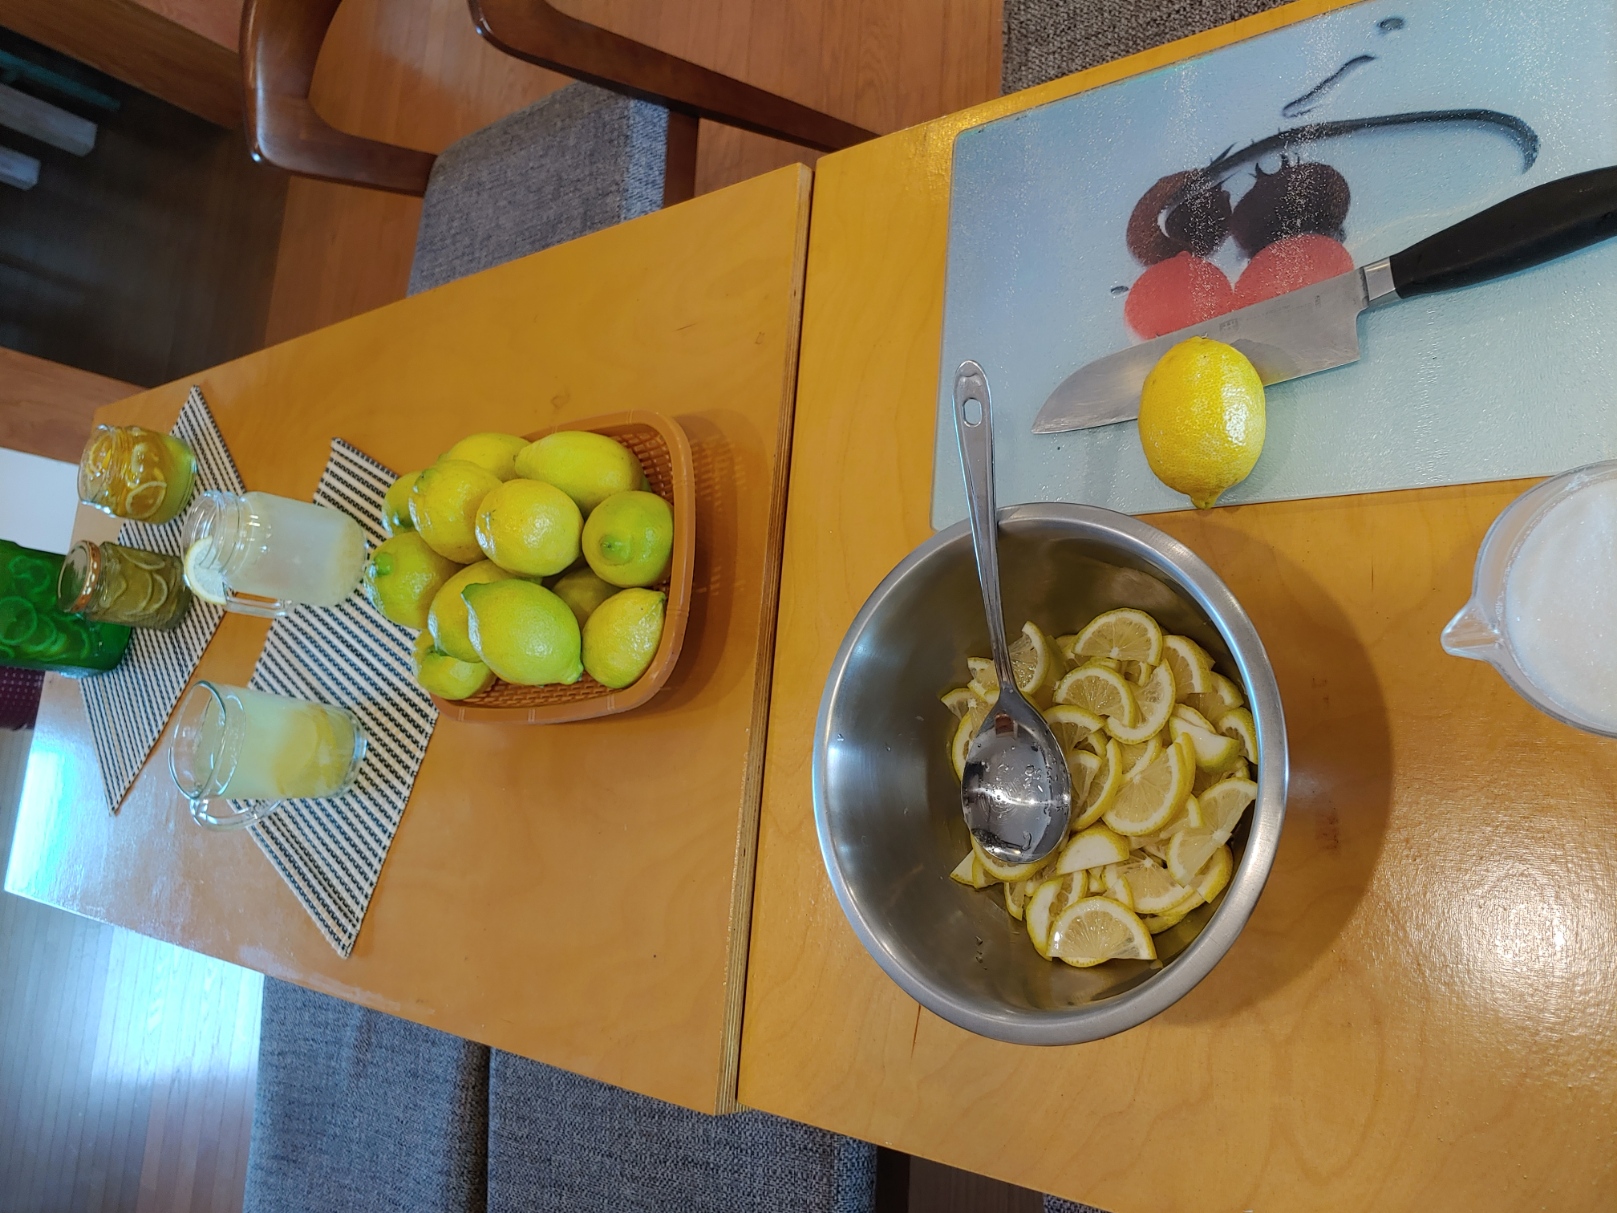 그린레몬 3kg - 무농약인증 레몬